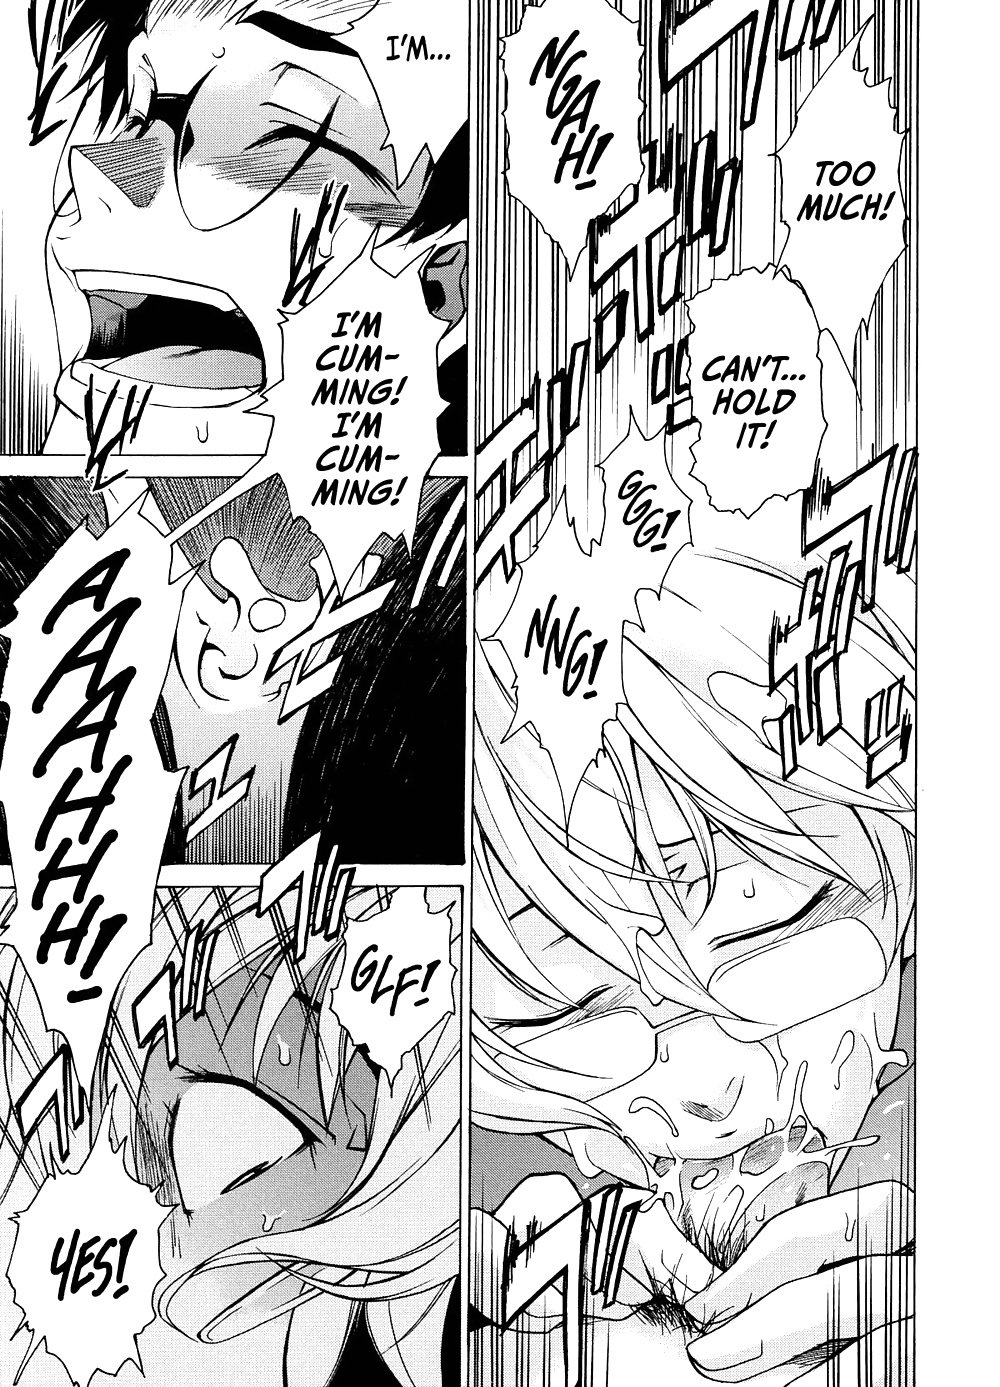 Domin-8 Me   Take On me   Hentai Manga Part 2 (9/98)